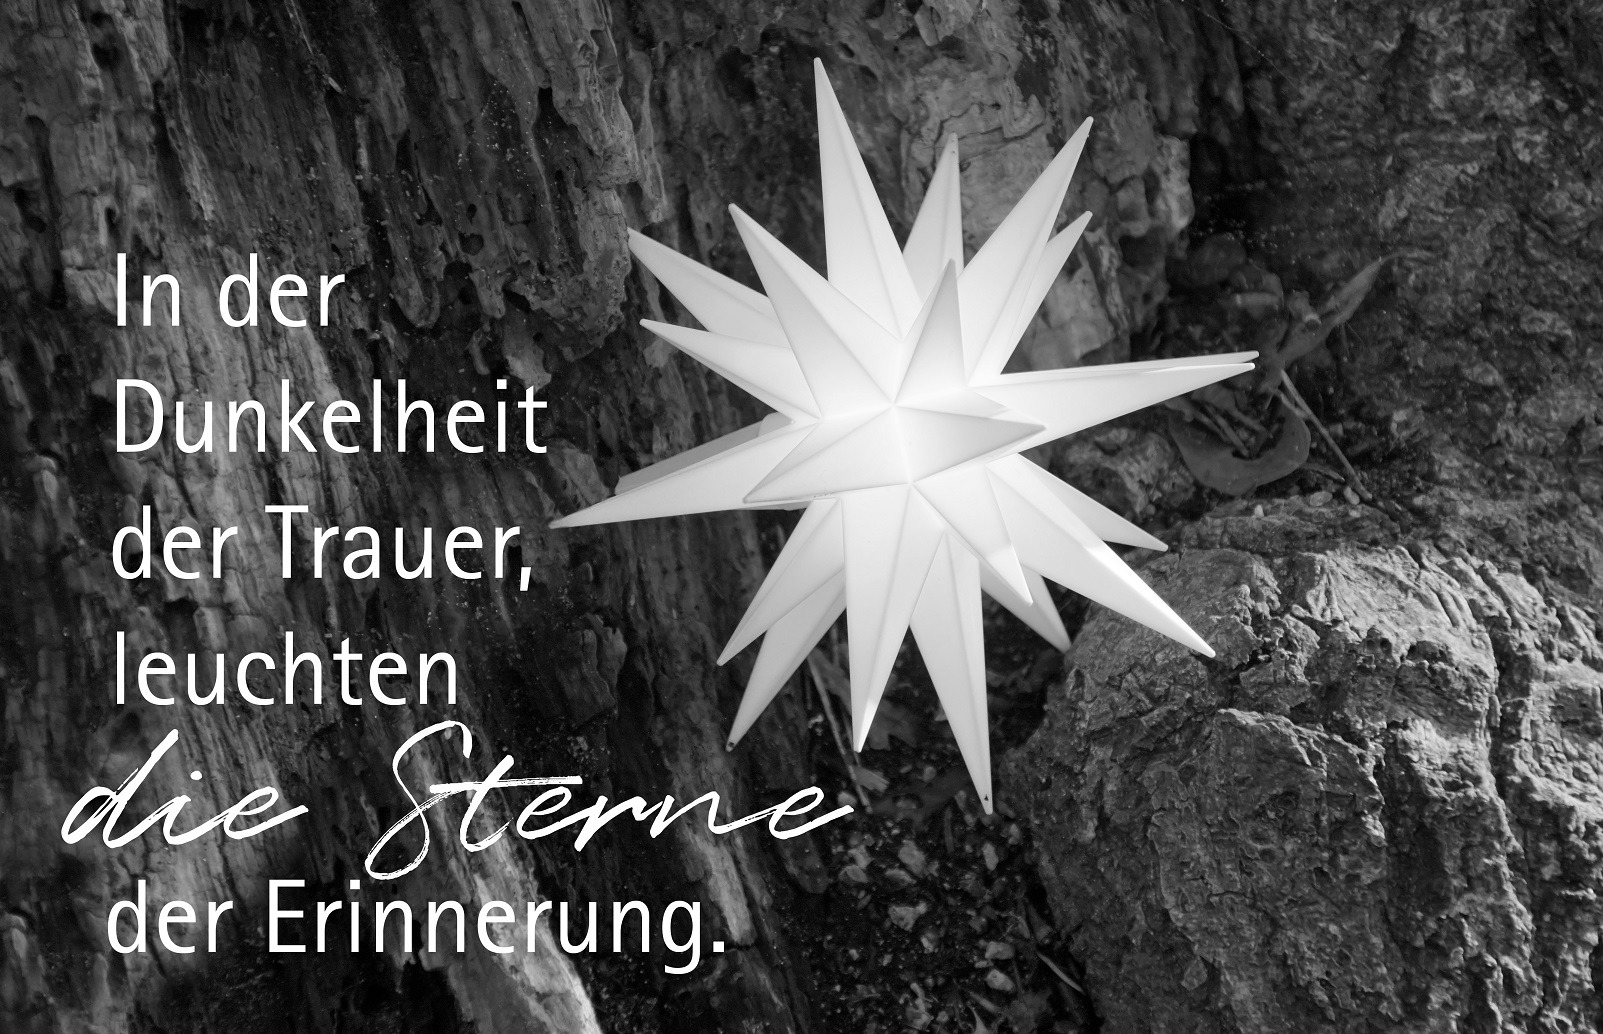 Friedwald, Stern, Baum des Lebens, Erinnerung, Sterne, Trauerrede
www.redebewegt.de